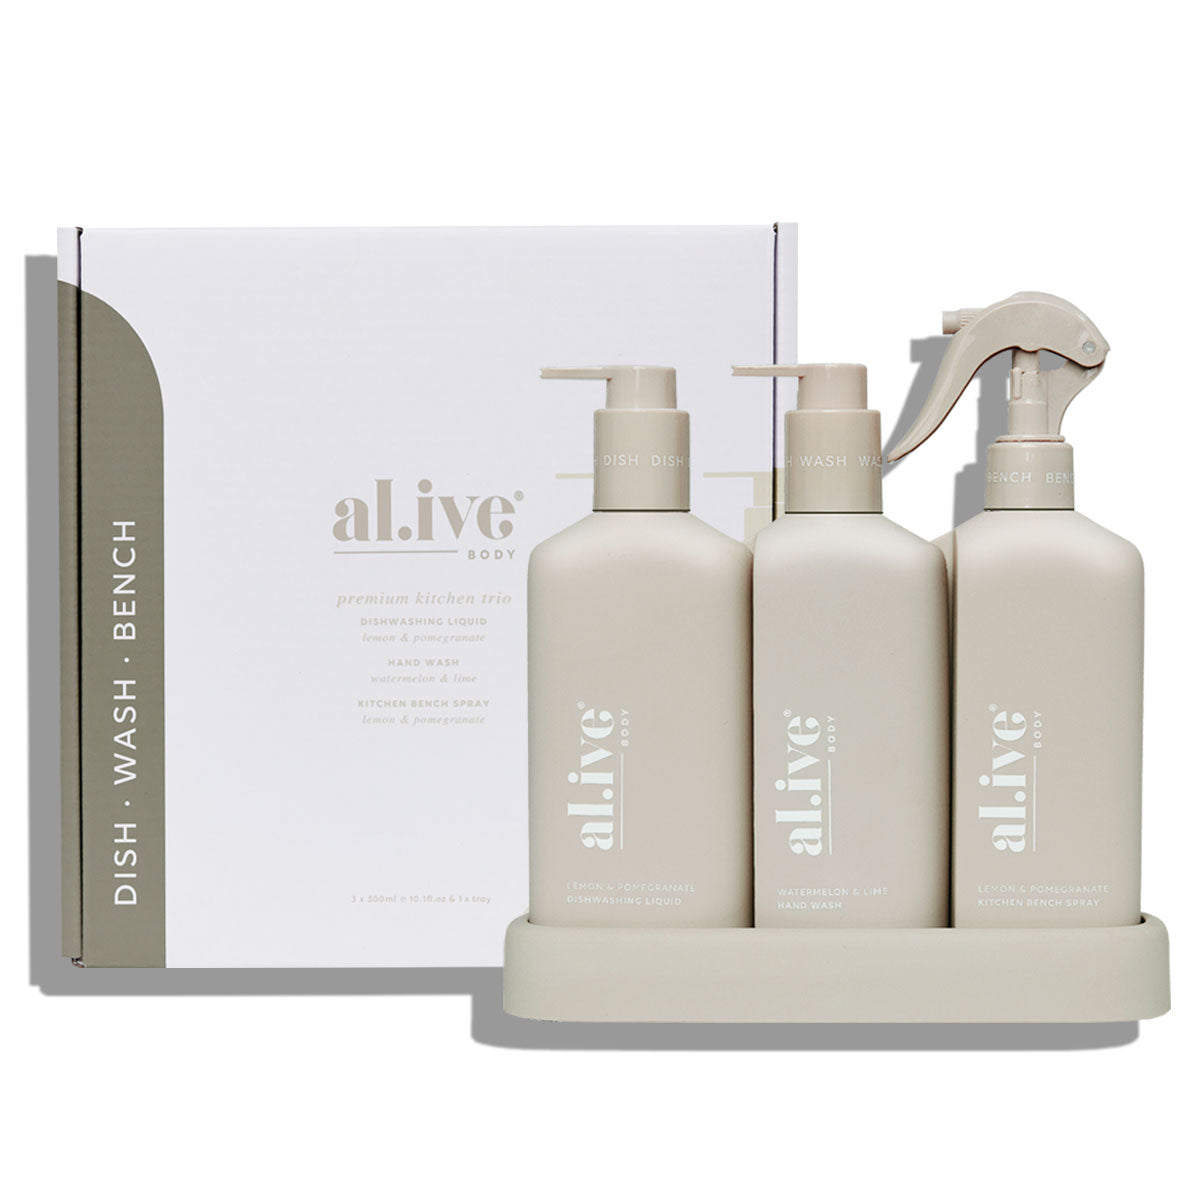 al.ive body - Dishwashing Liquid, Bench Spray & Hand Wash Trio